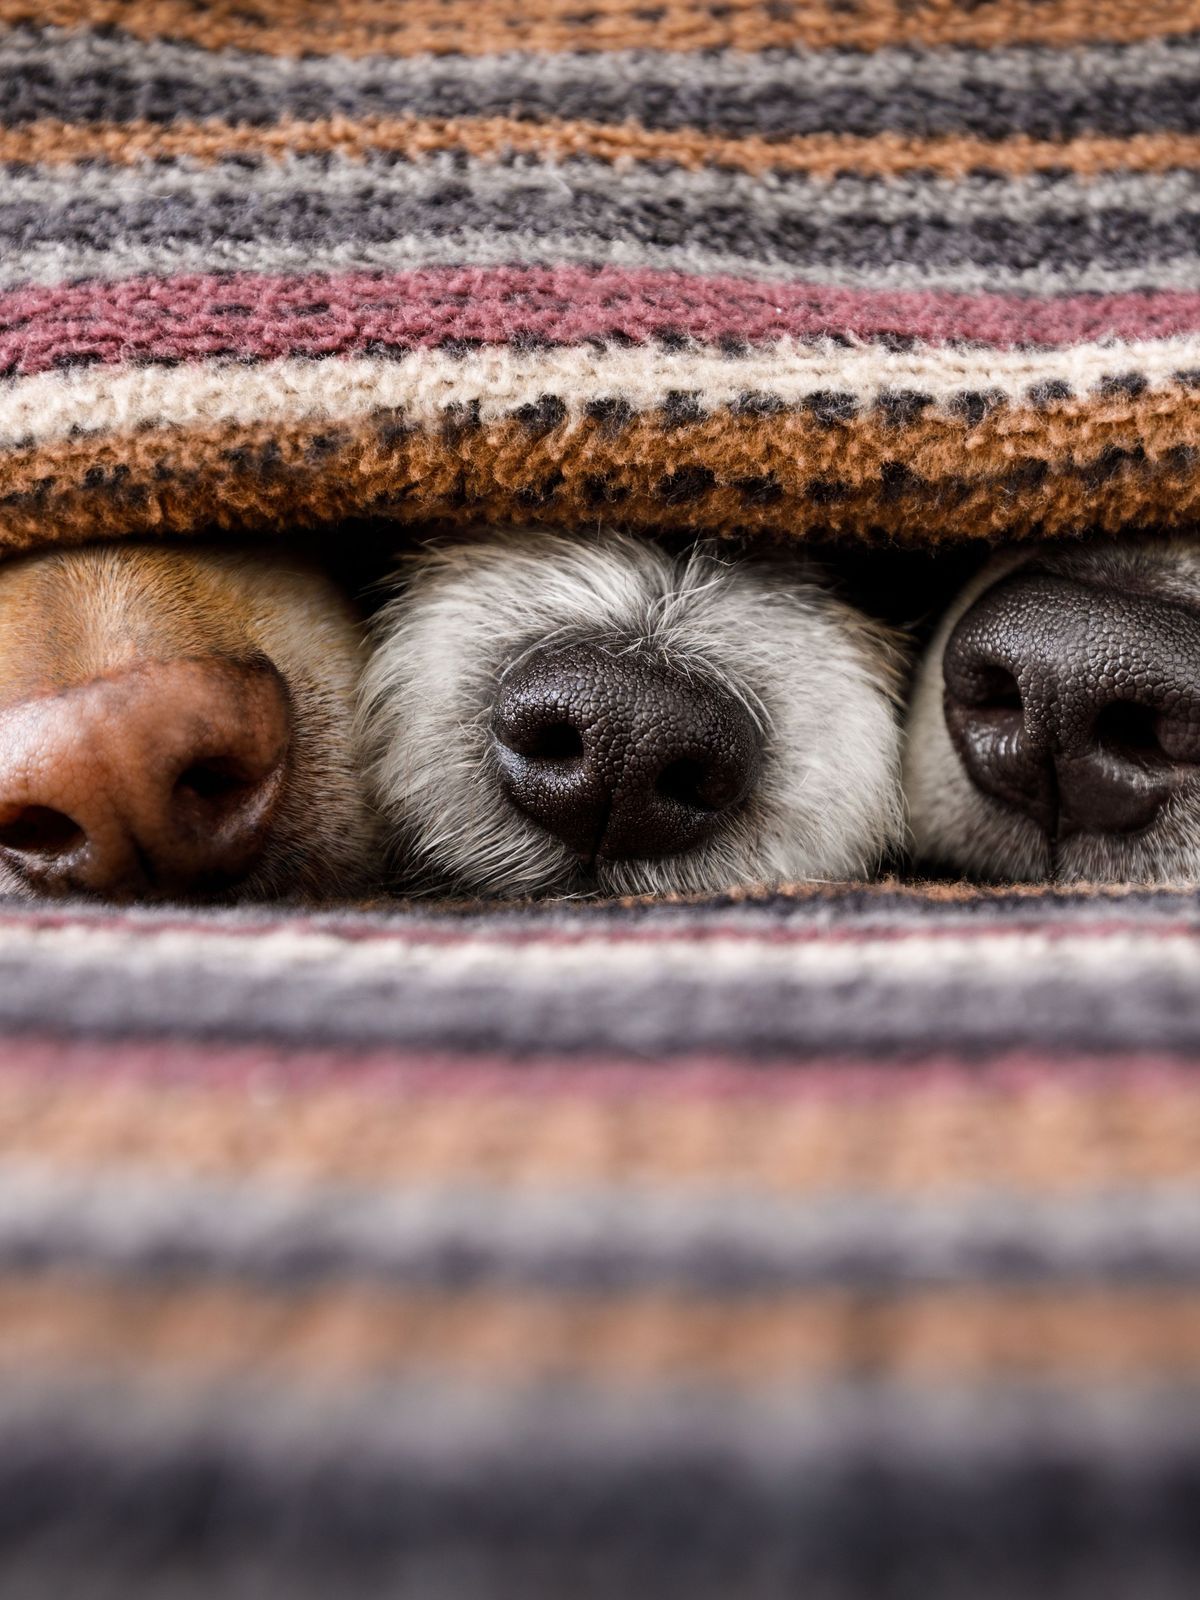 dogs under blanket together